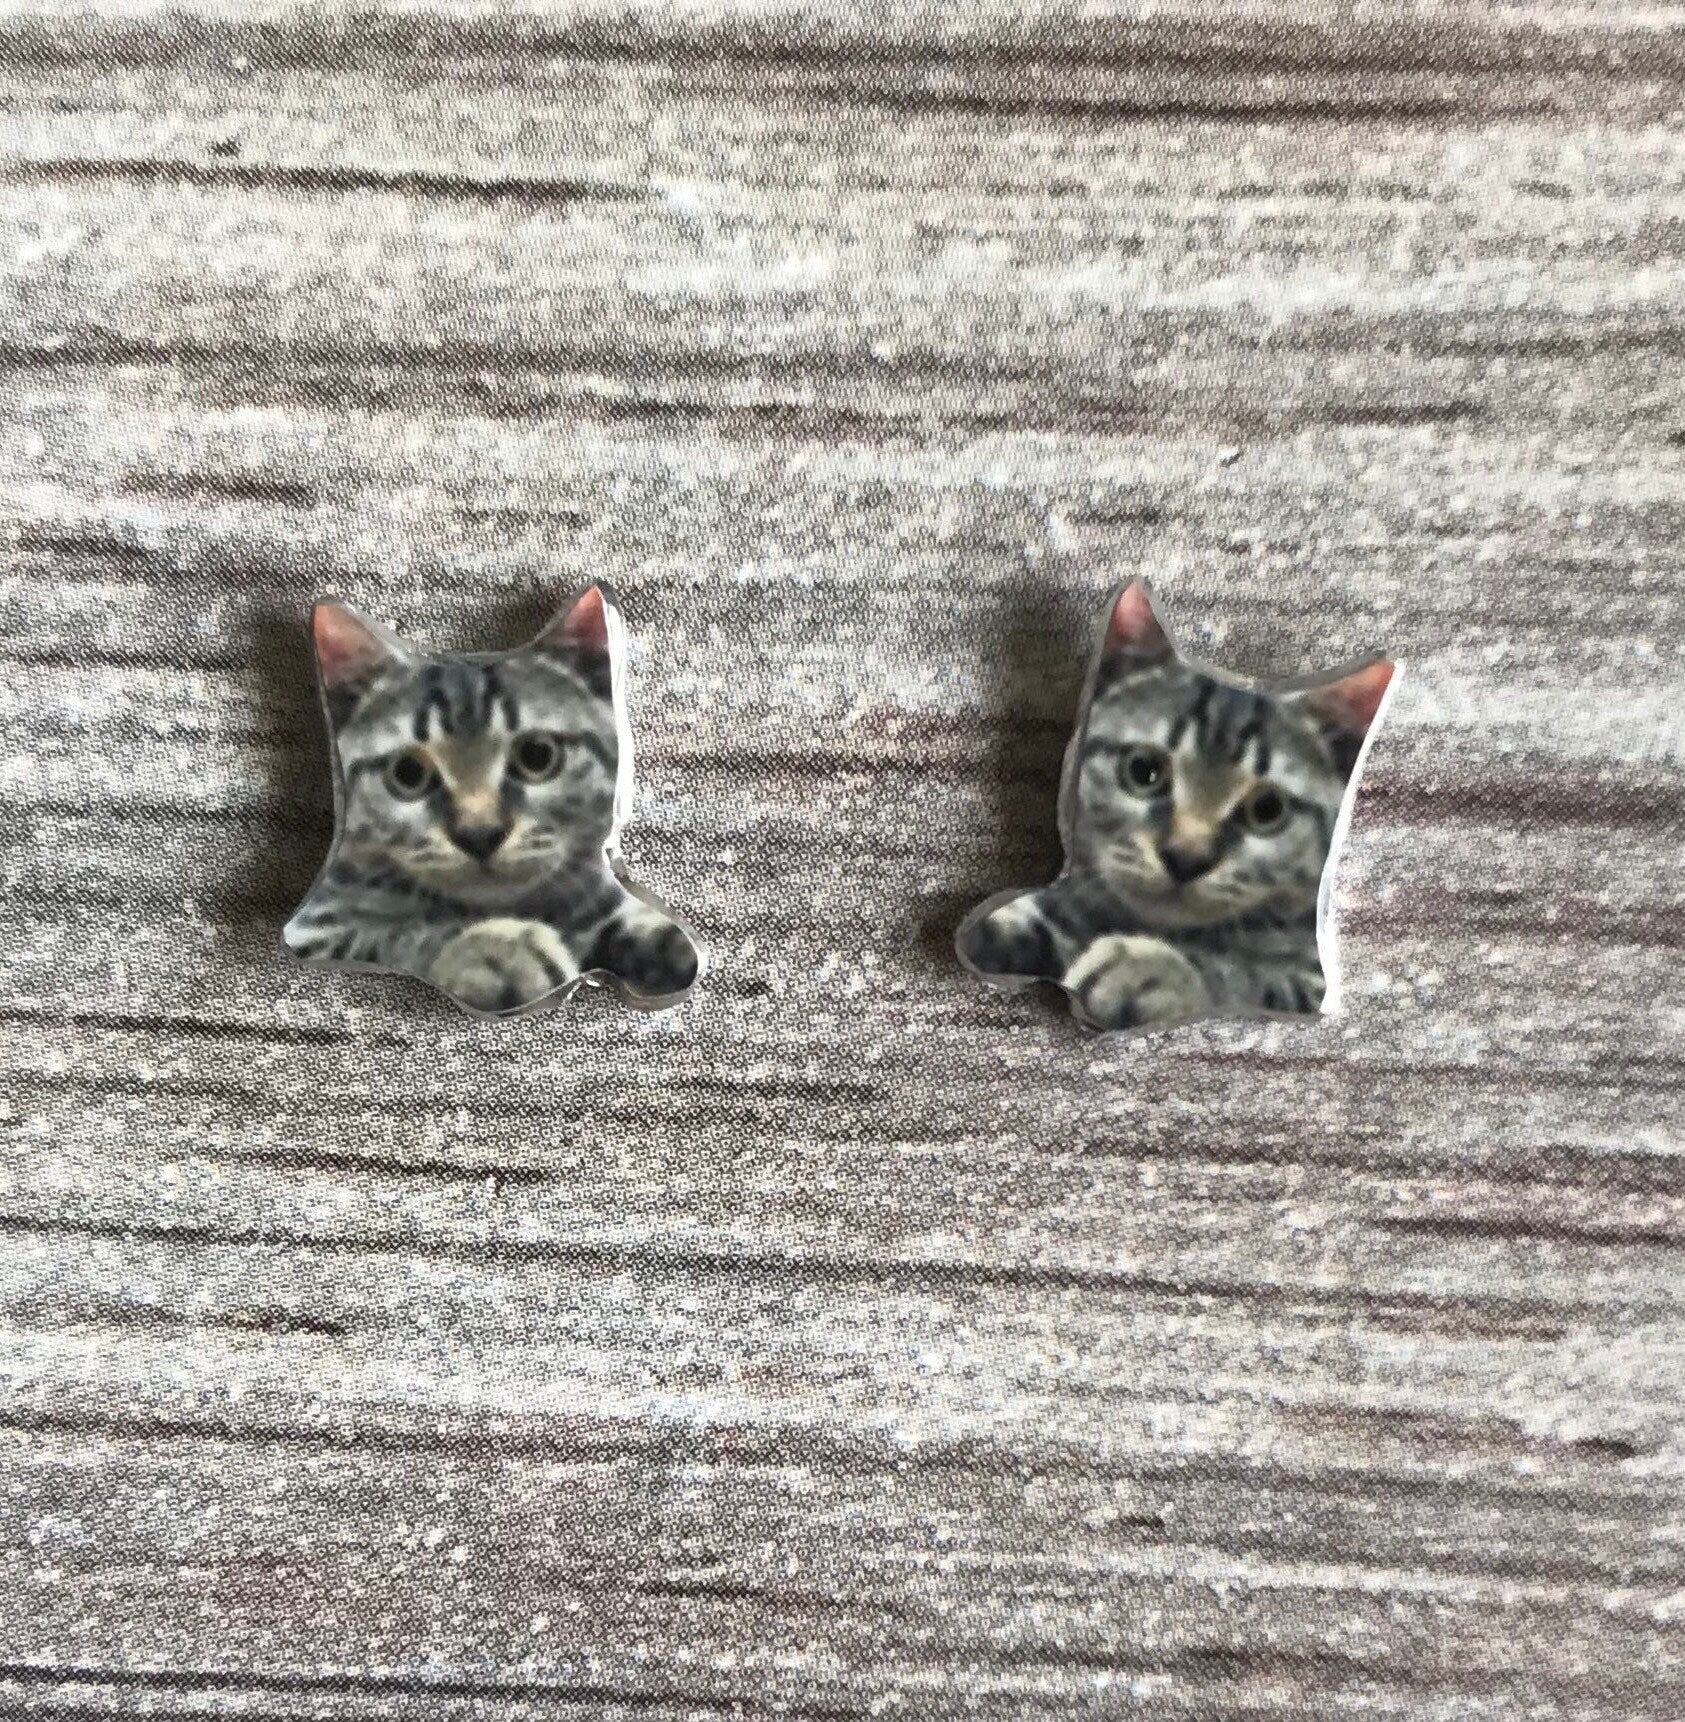 Cute Kitten Studs - Tabby Cat Earrings - Kitten Earrings - Tabby Cat Gift - Cute Cat Earrings - Cat Stud Earrings